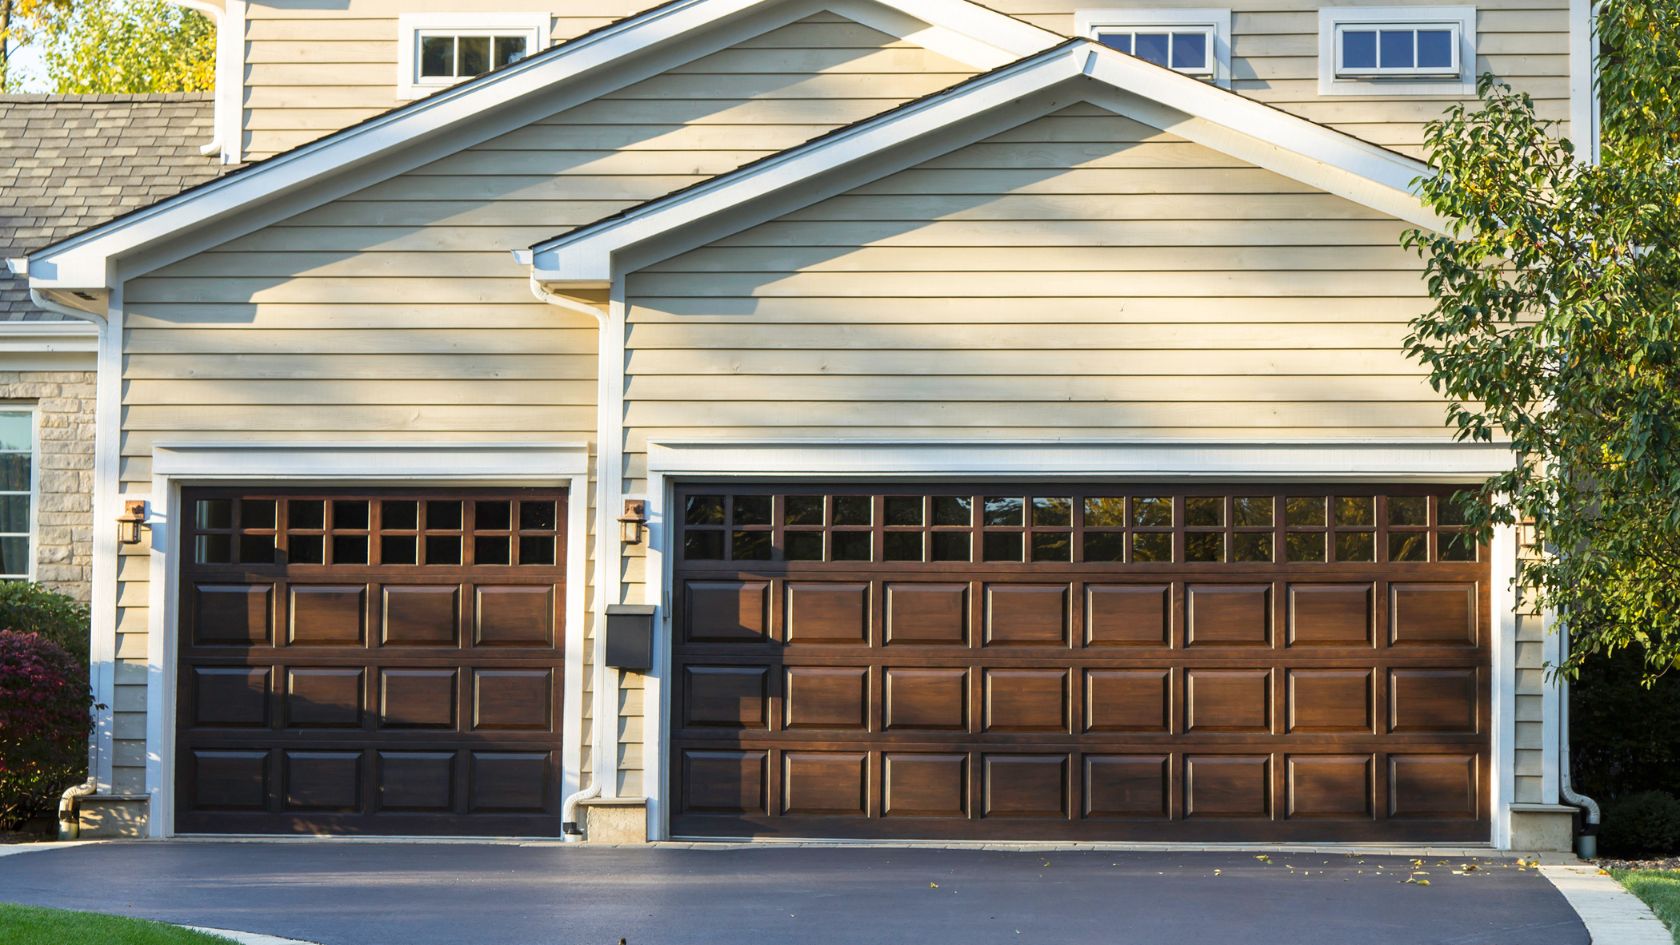 A brown garage door is open in front of a house